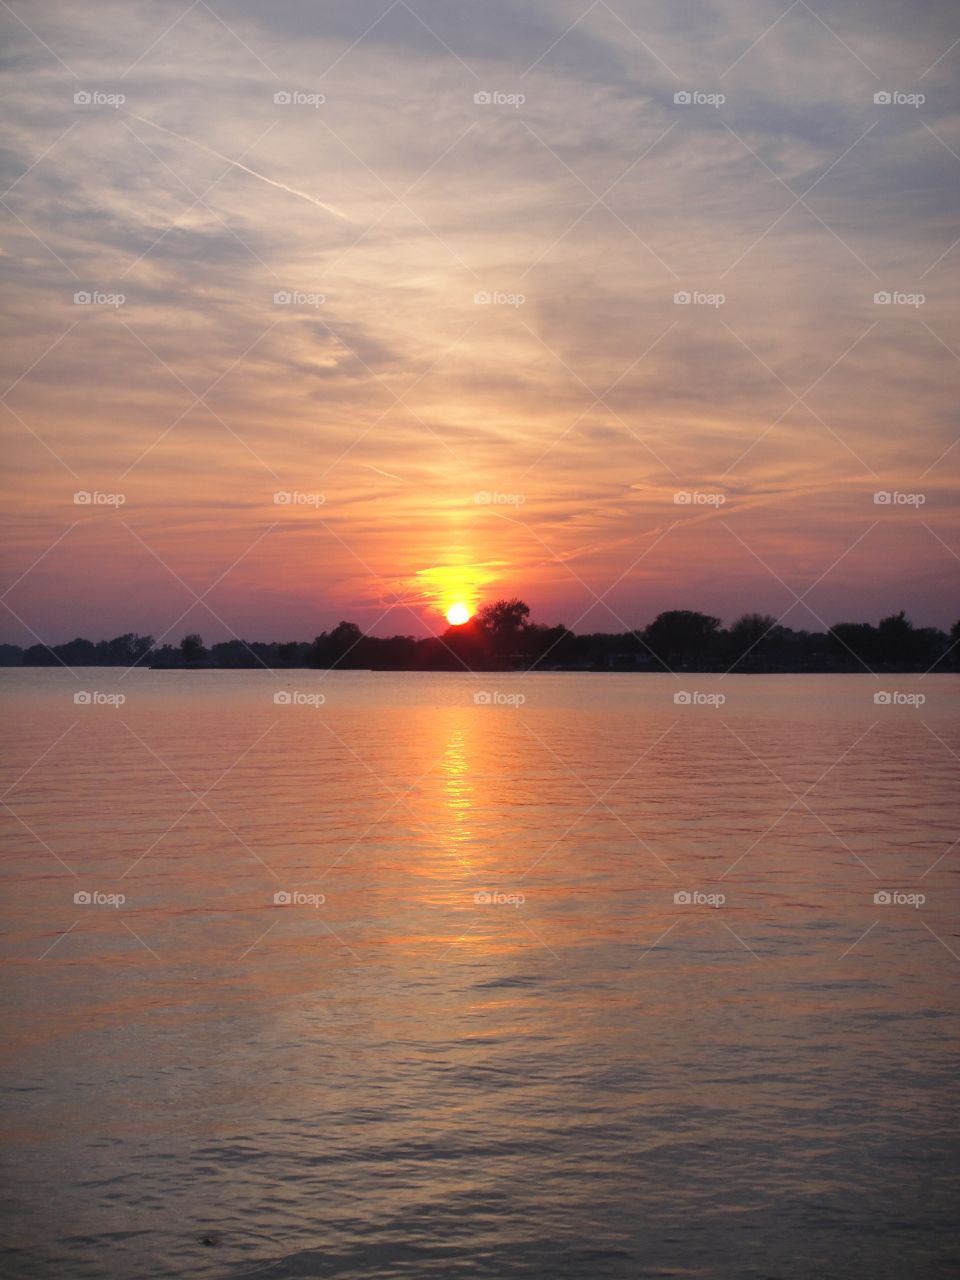 ~iKandiPhotography~ Lake Erie Sunset 